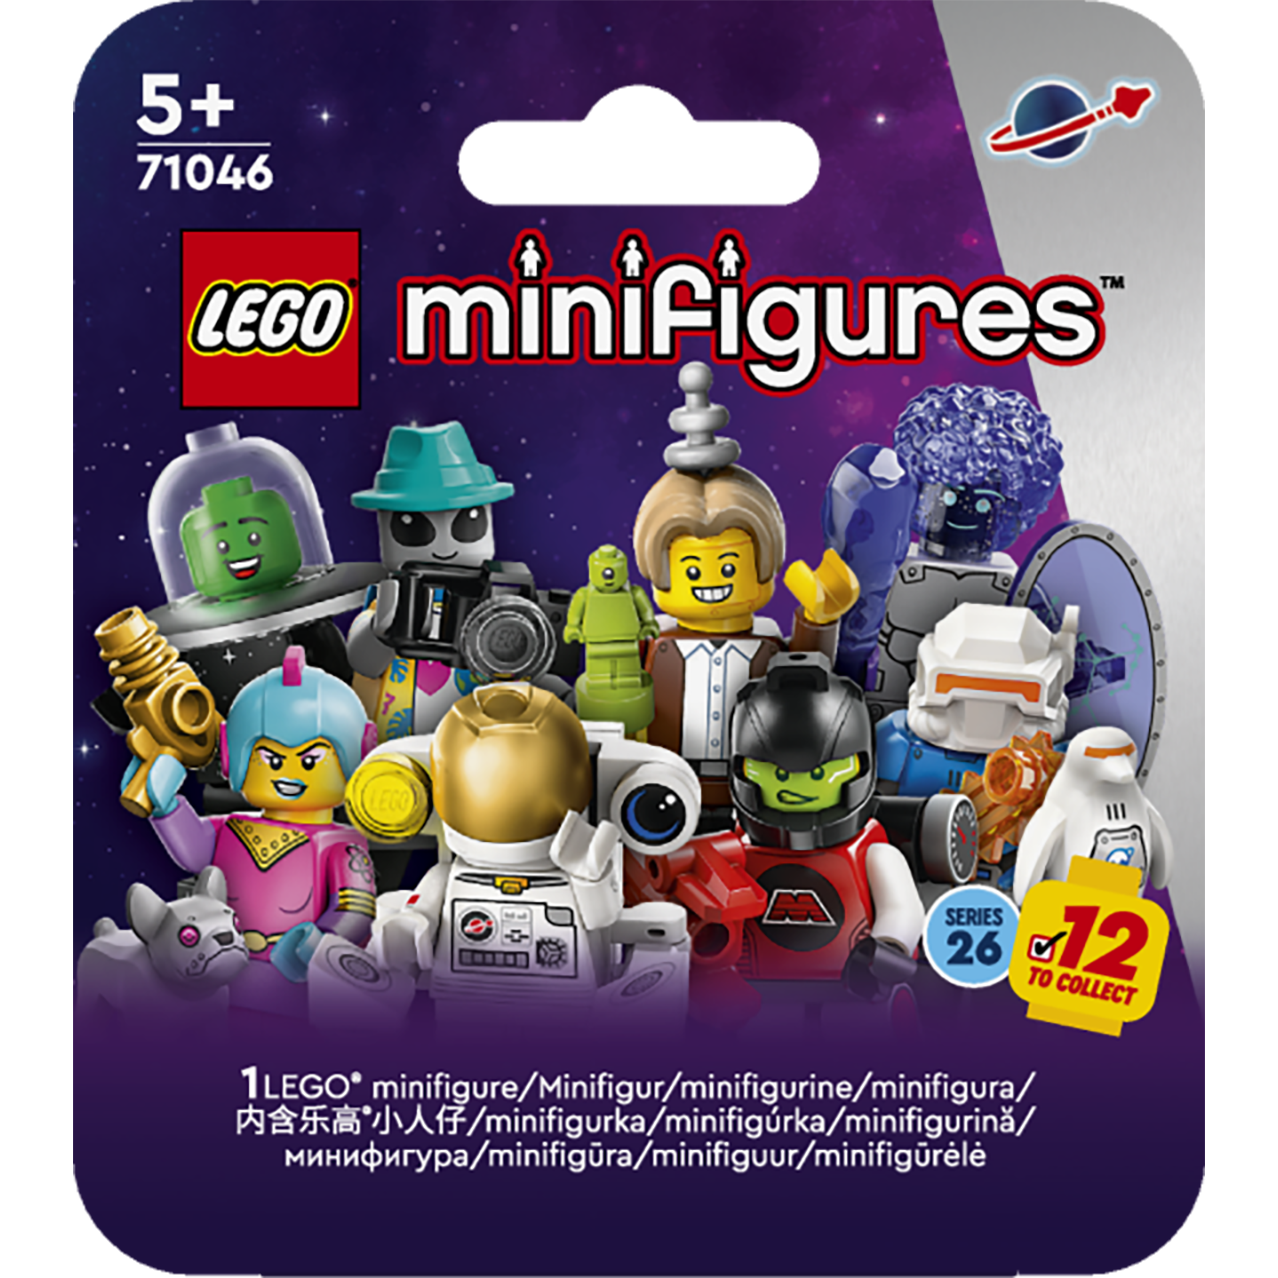 Конструктор LEGO Minifigures Космос Серия 26, 9 деталей (71046) - фото 1